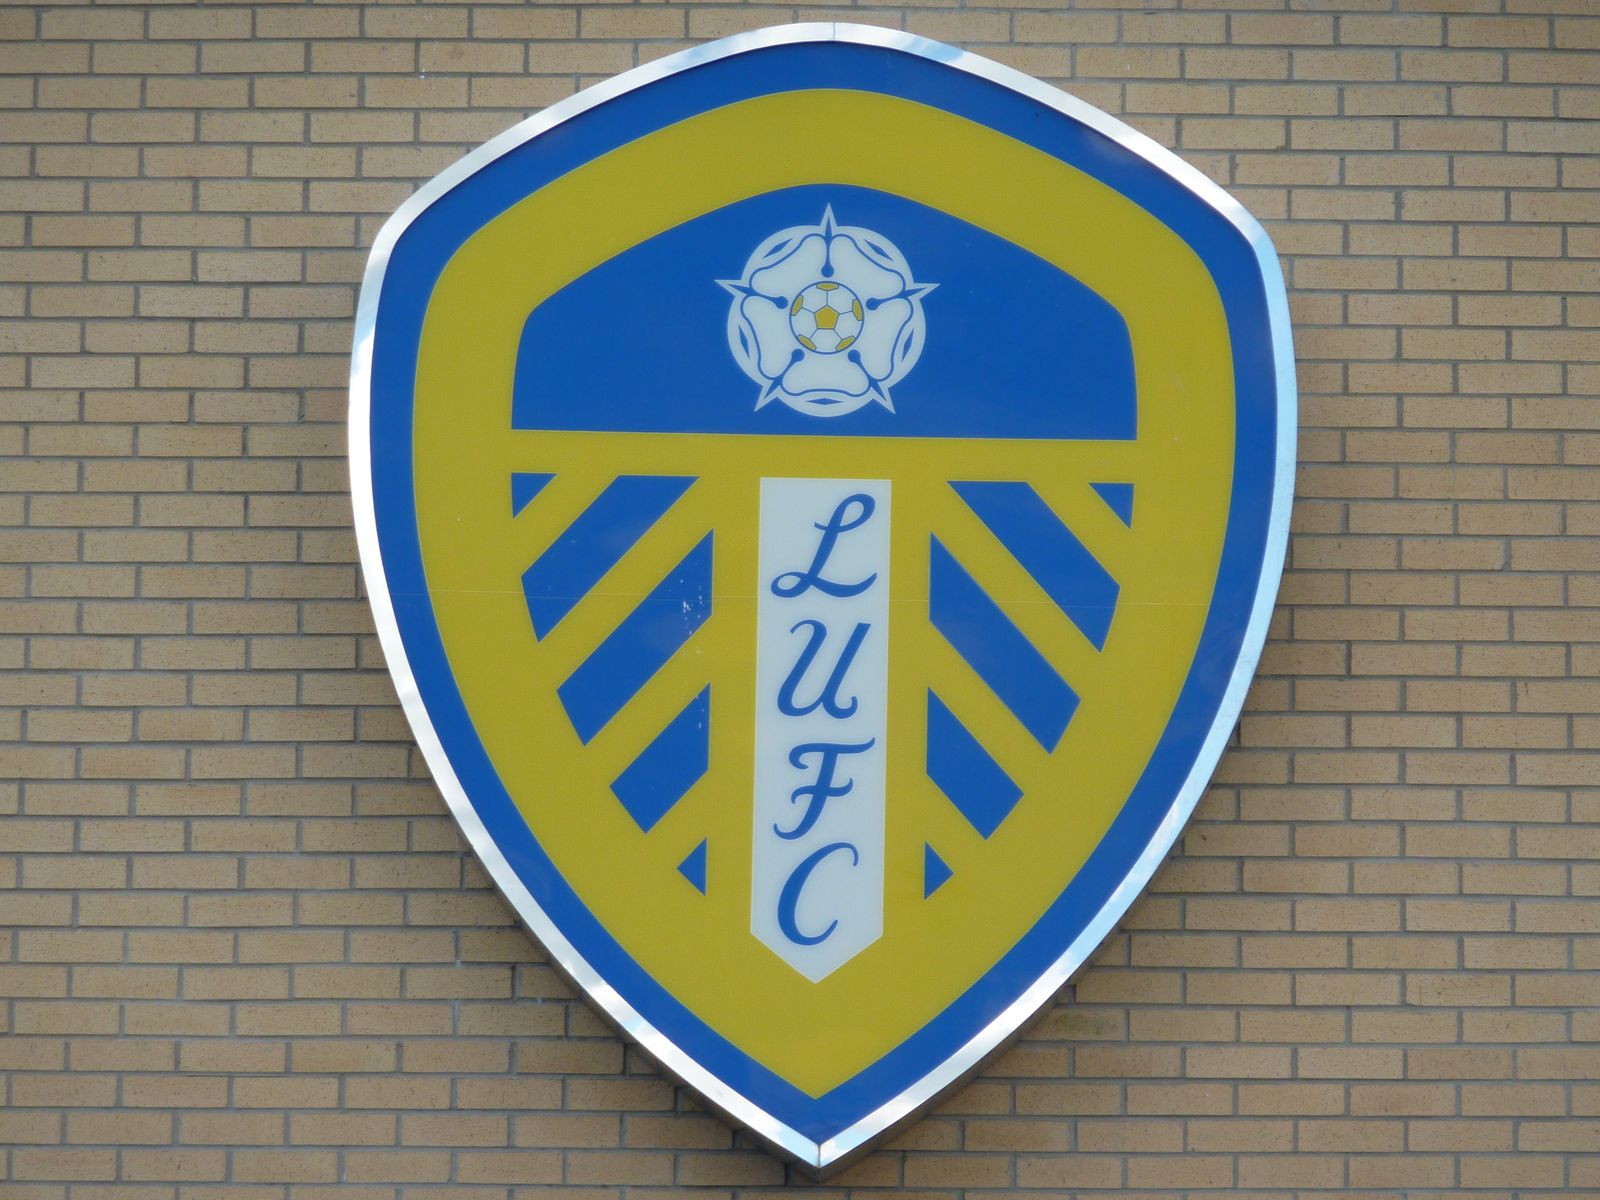 L'emblème du club de football Leeds United